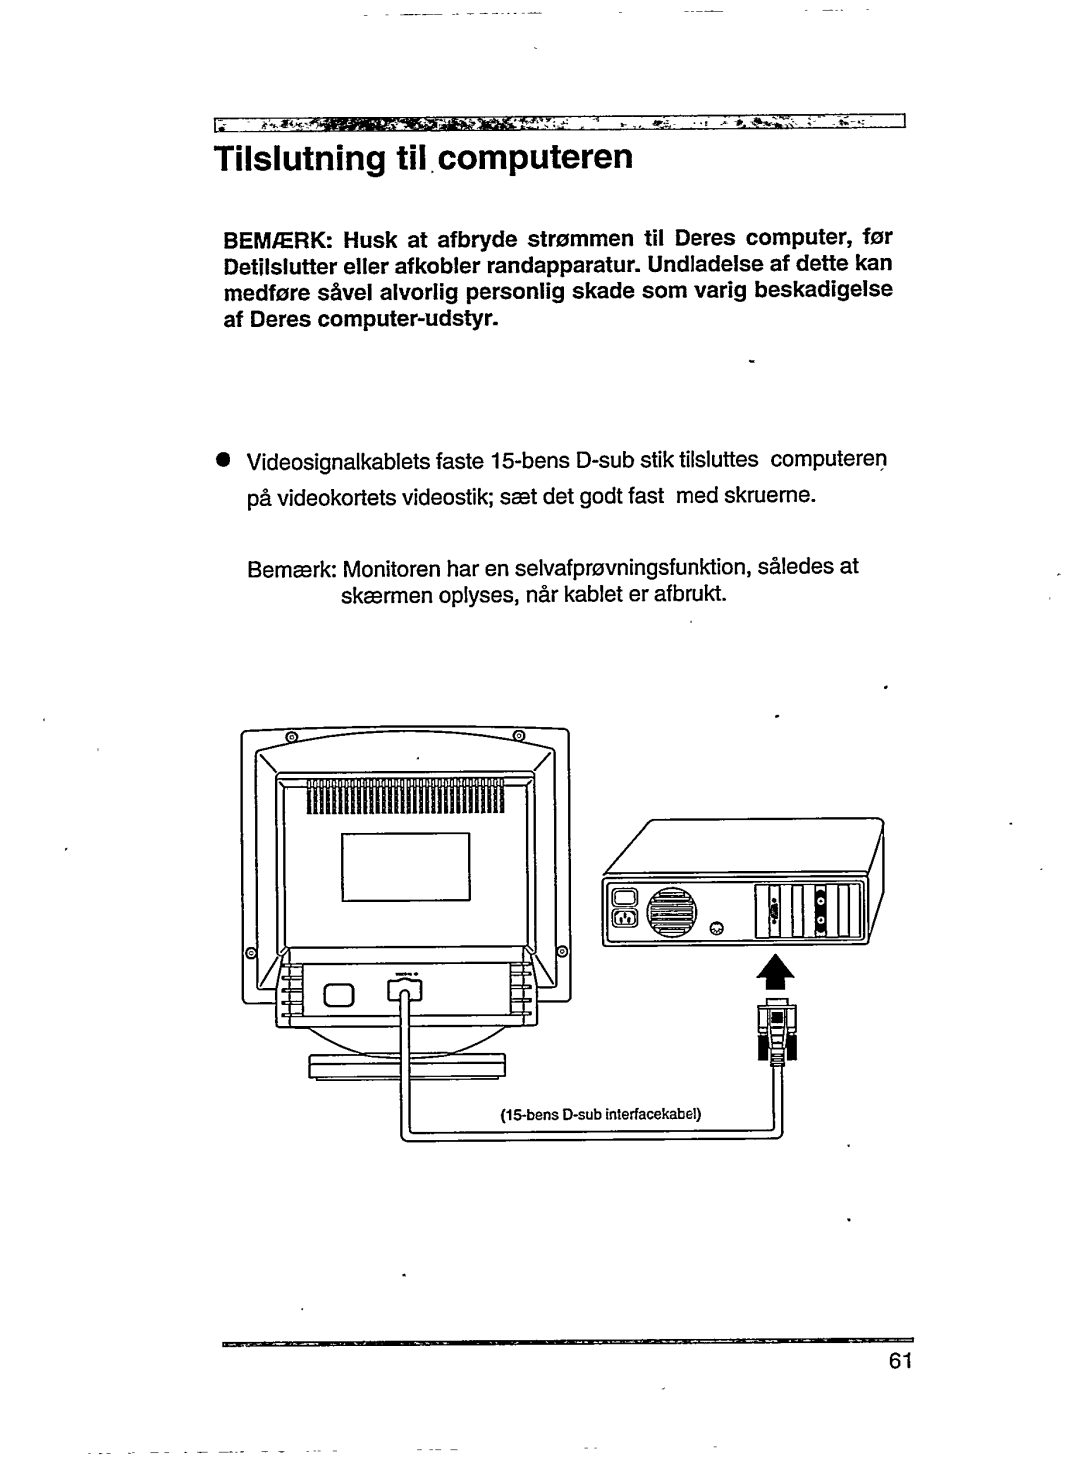 Philips 15C04204 manual 